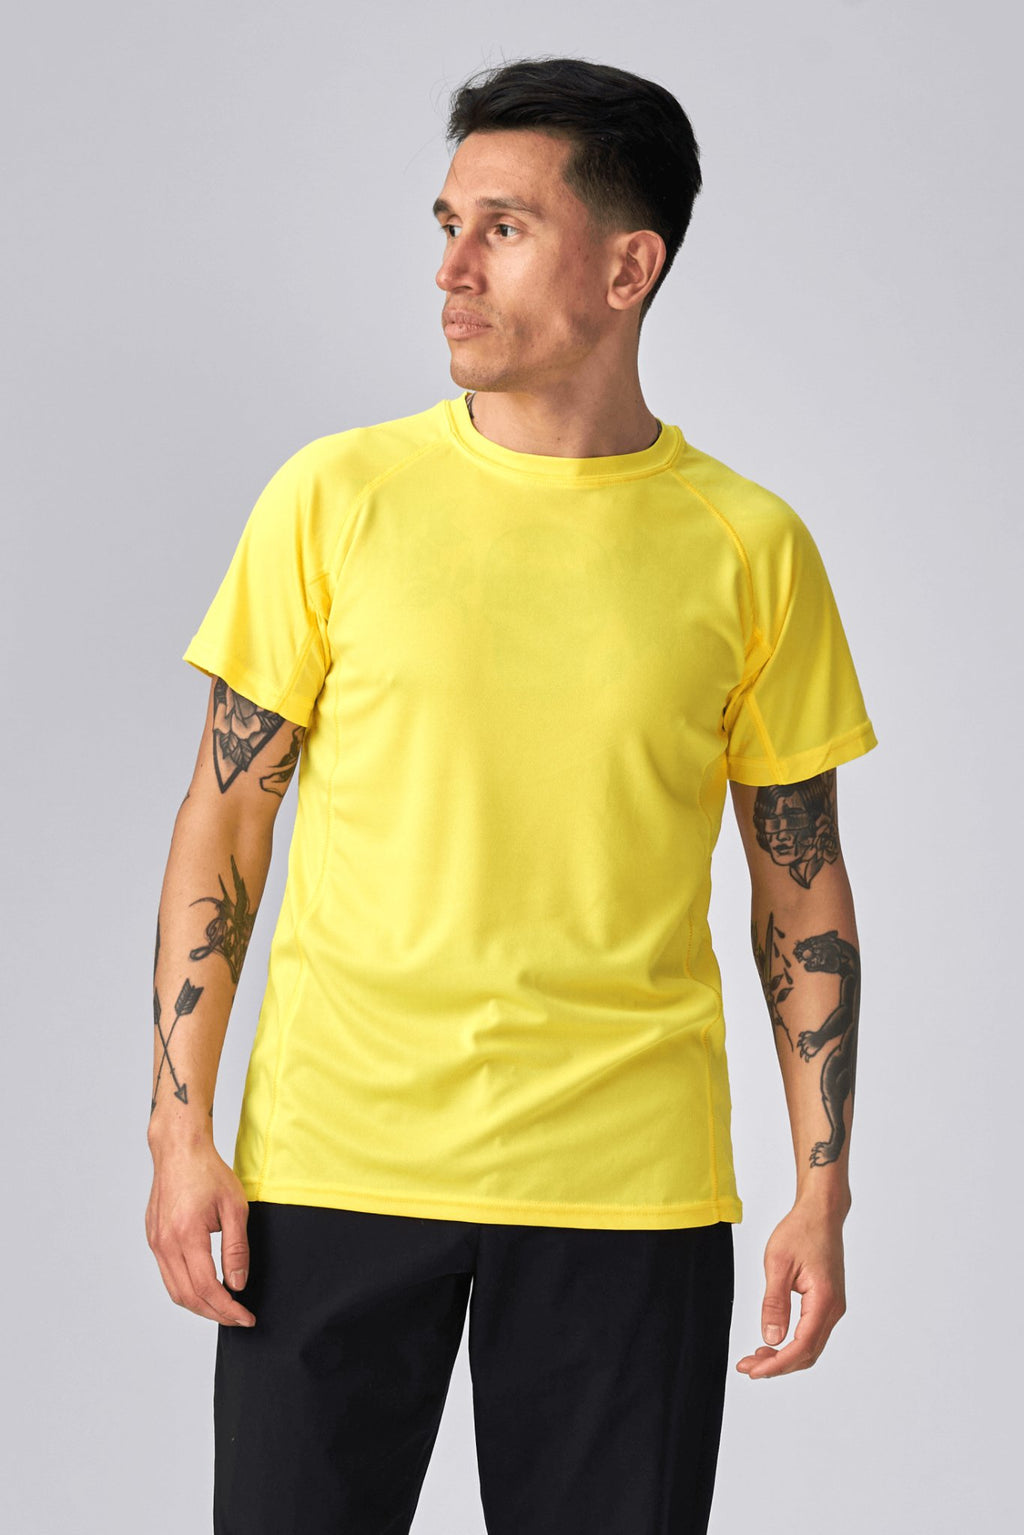 Εκπαίδευση T -shirt - Κίτρινο